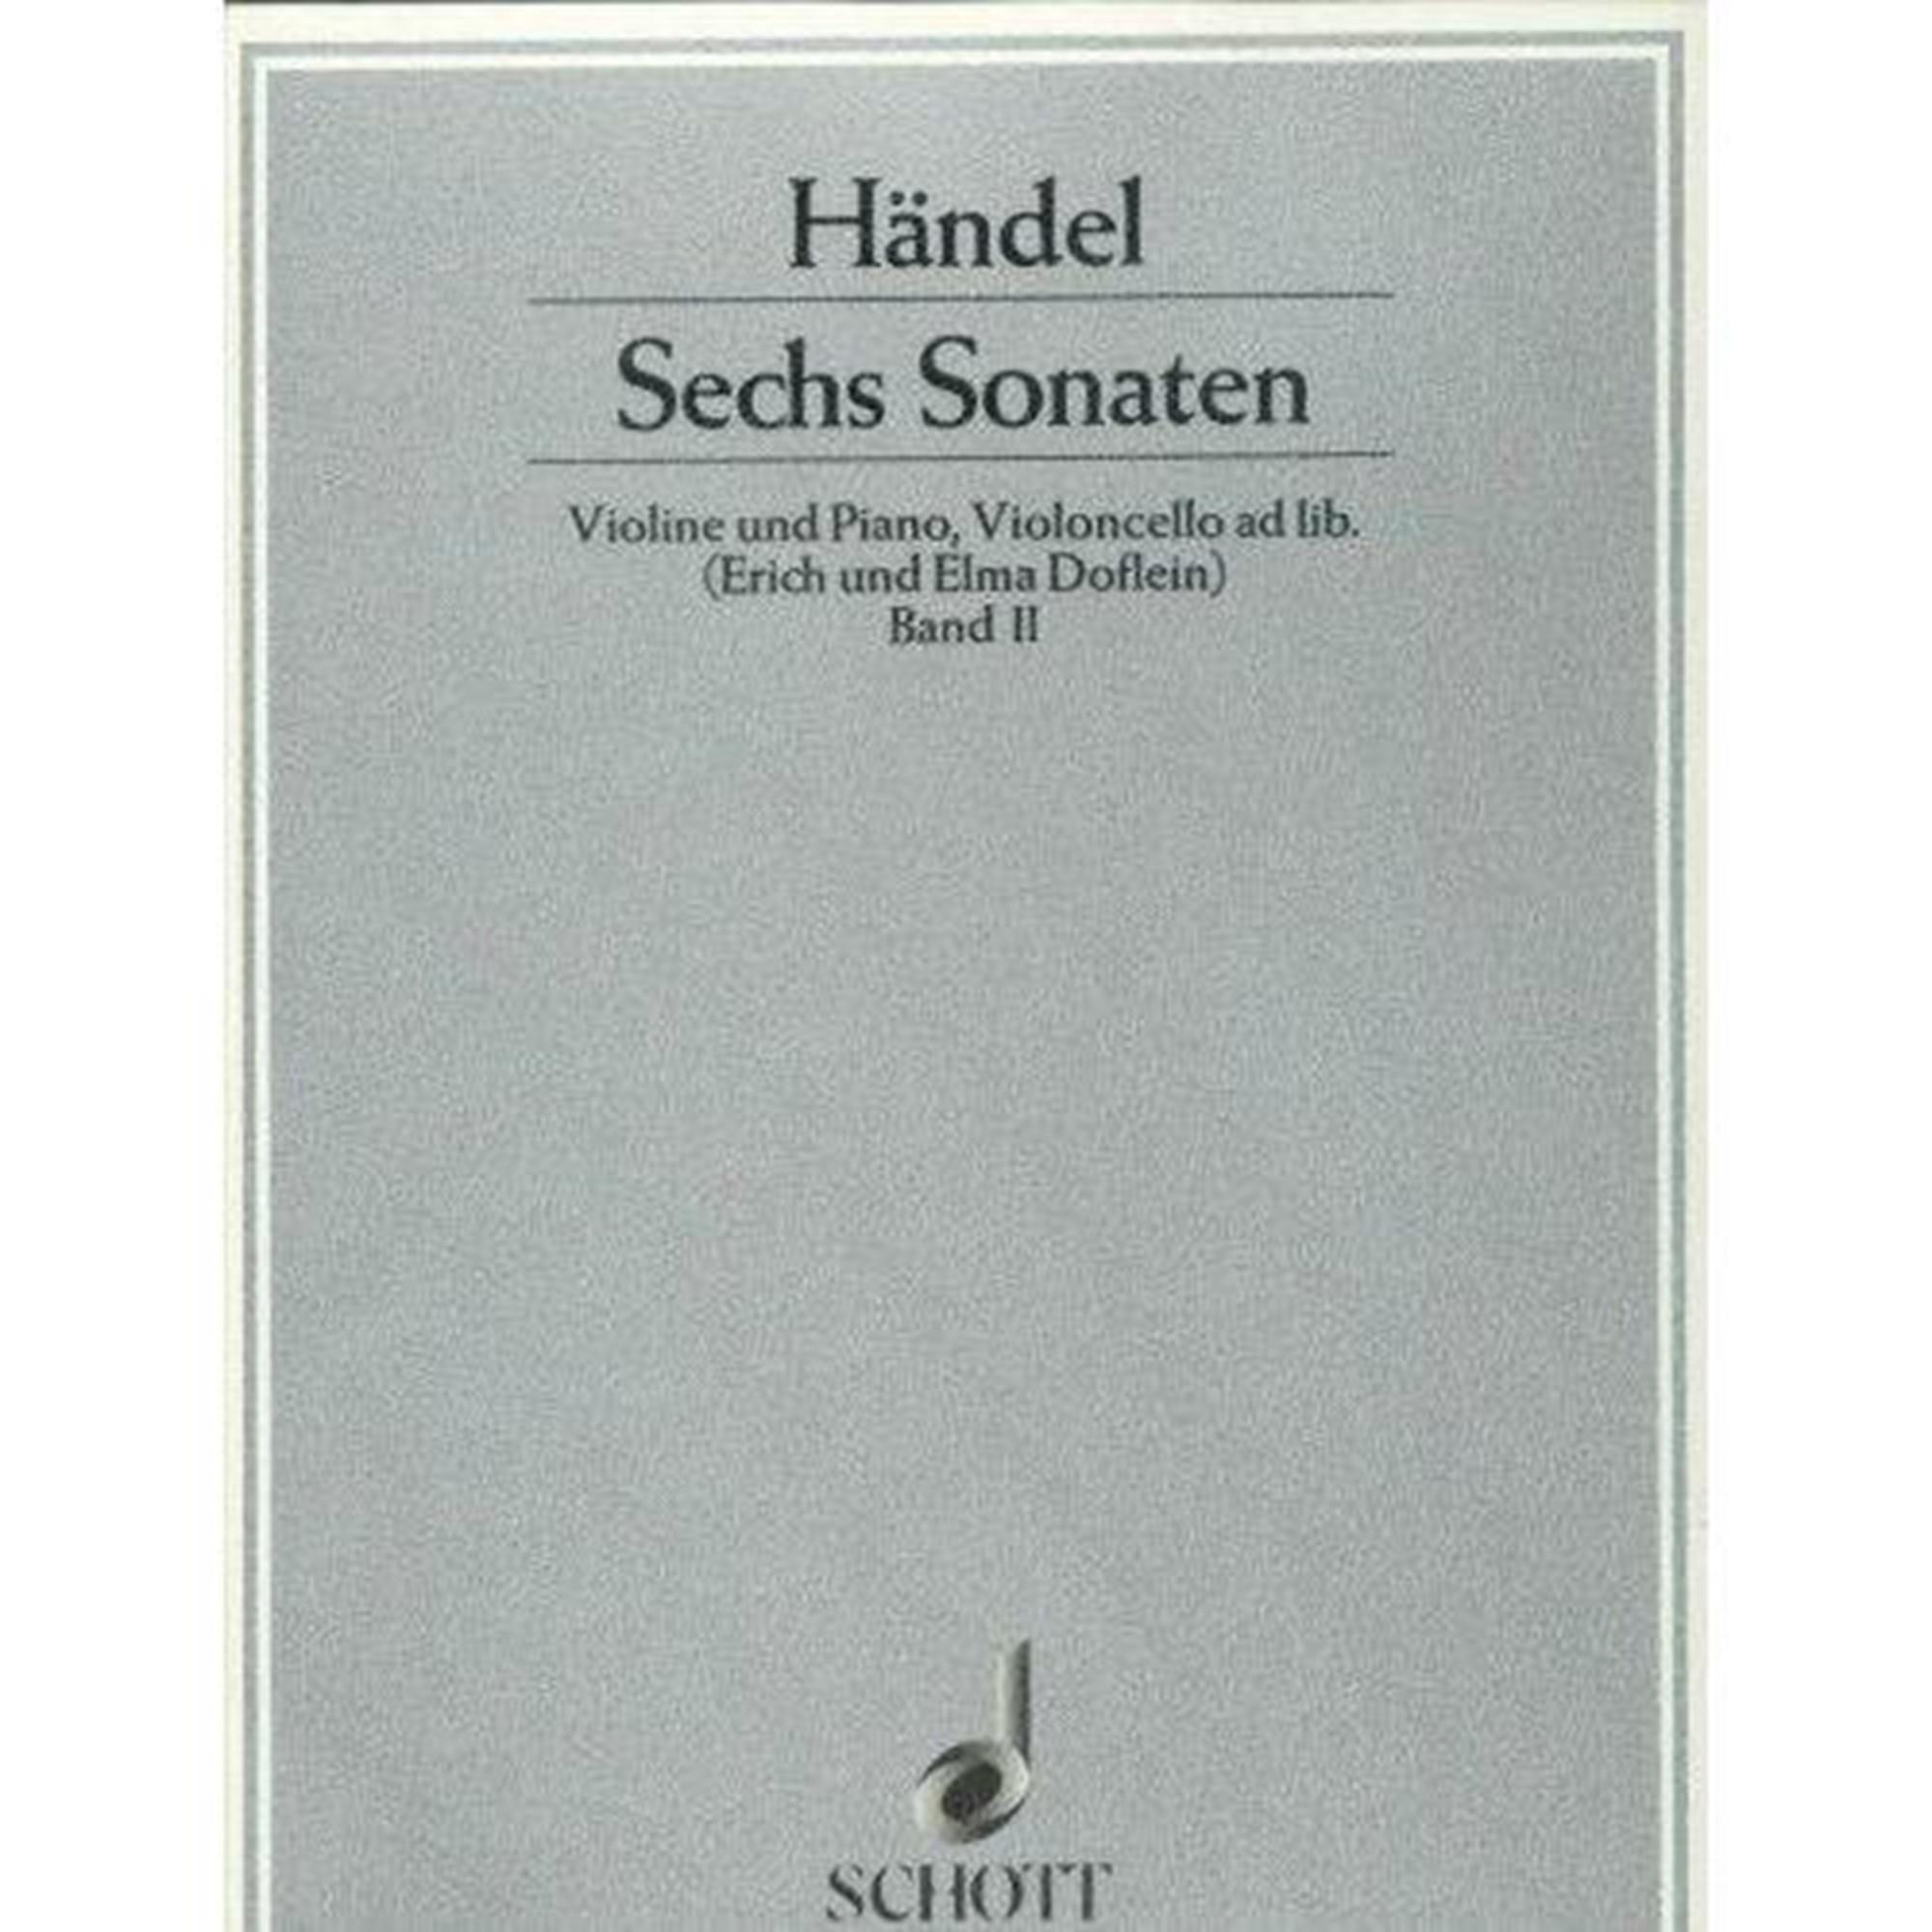 Handel Sechs Sonaten Violine und Piano (Erich und Elma Doflein) Band II - Schott